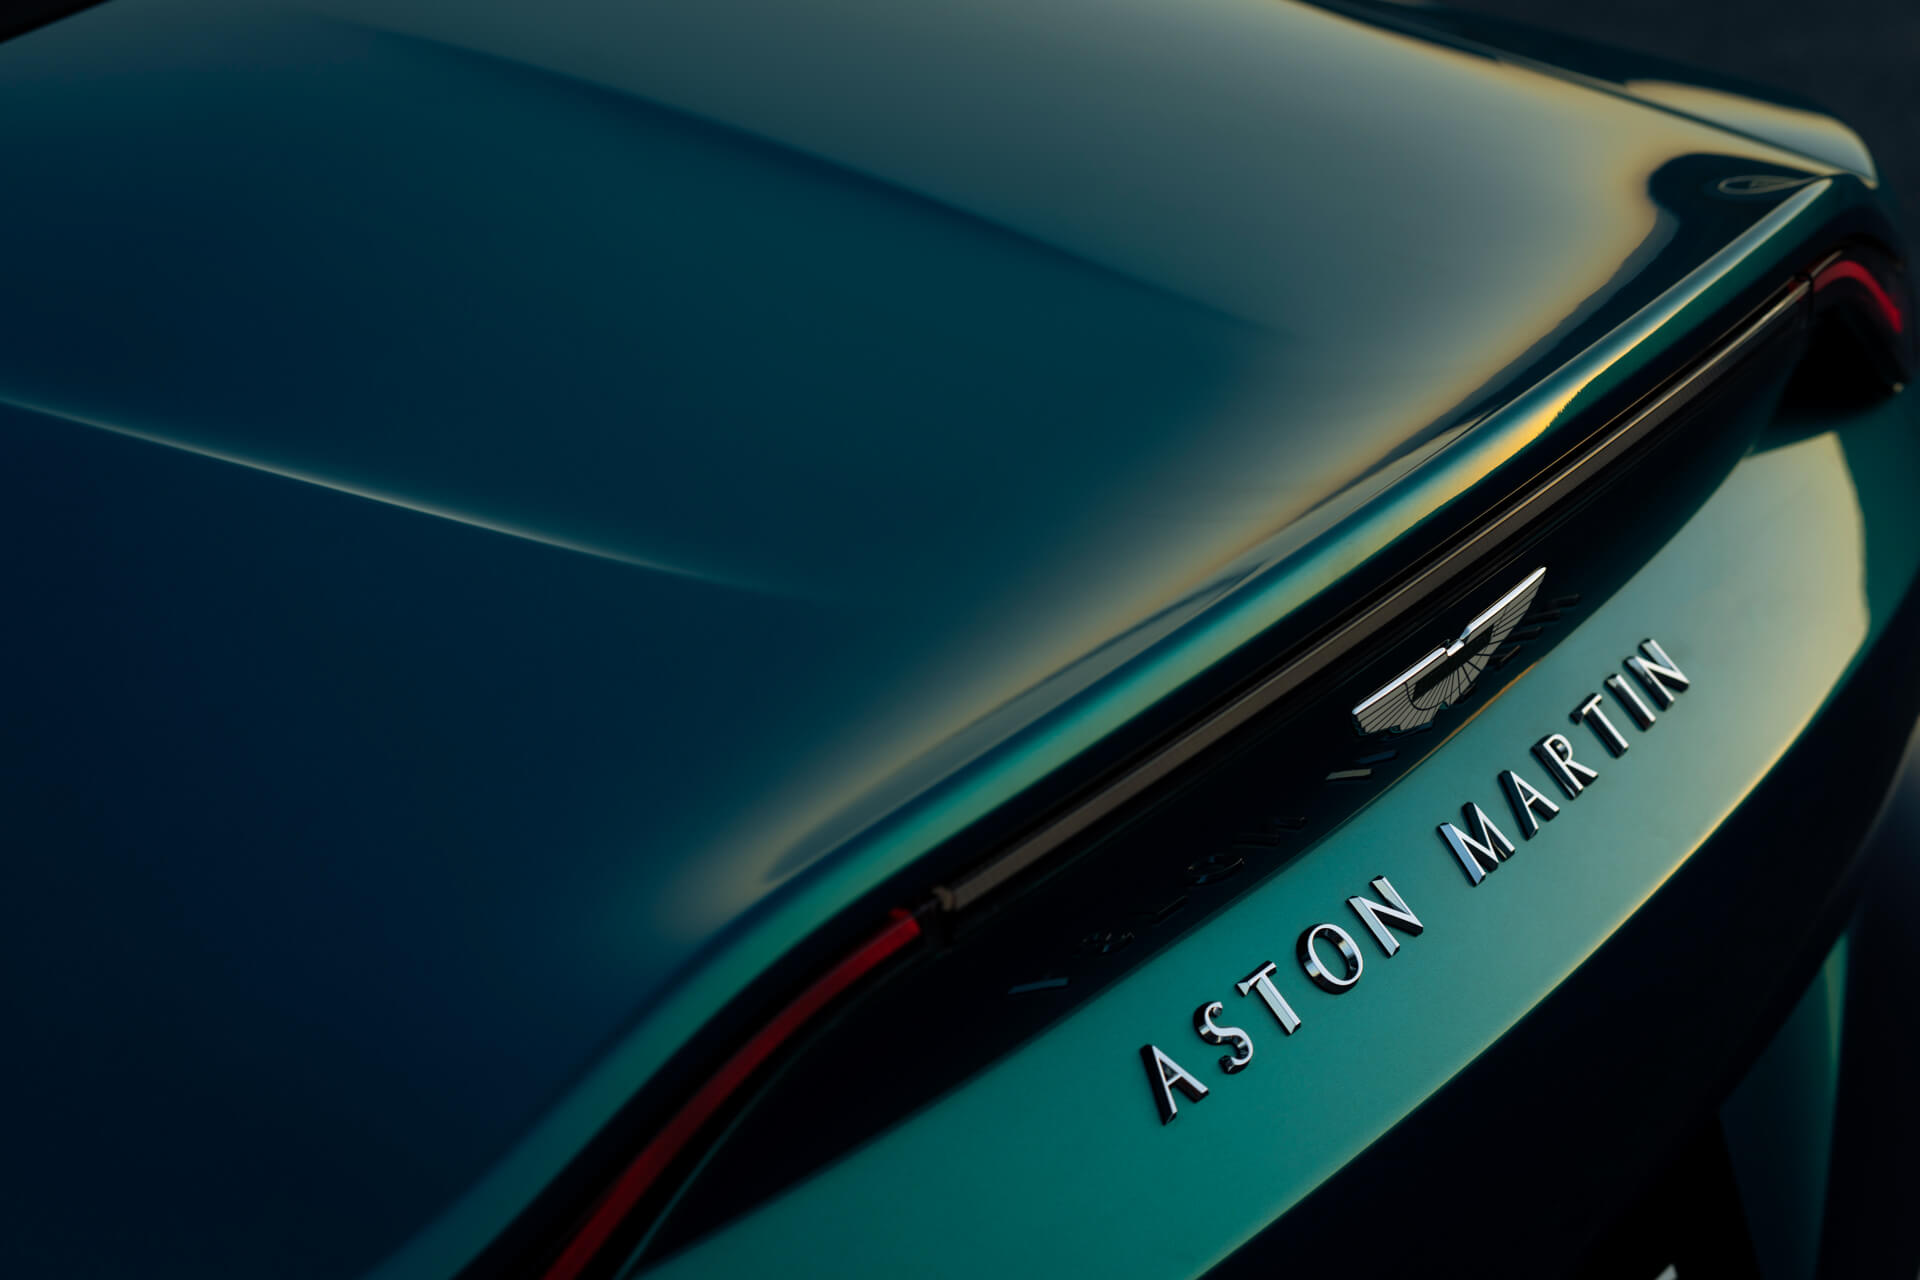 Aston Martin V12 Vantage Roadster pormenor asa traseira